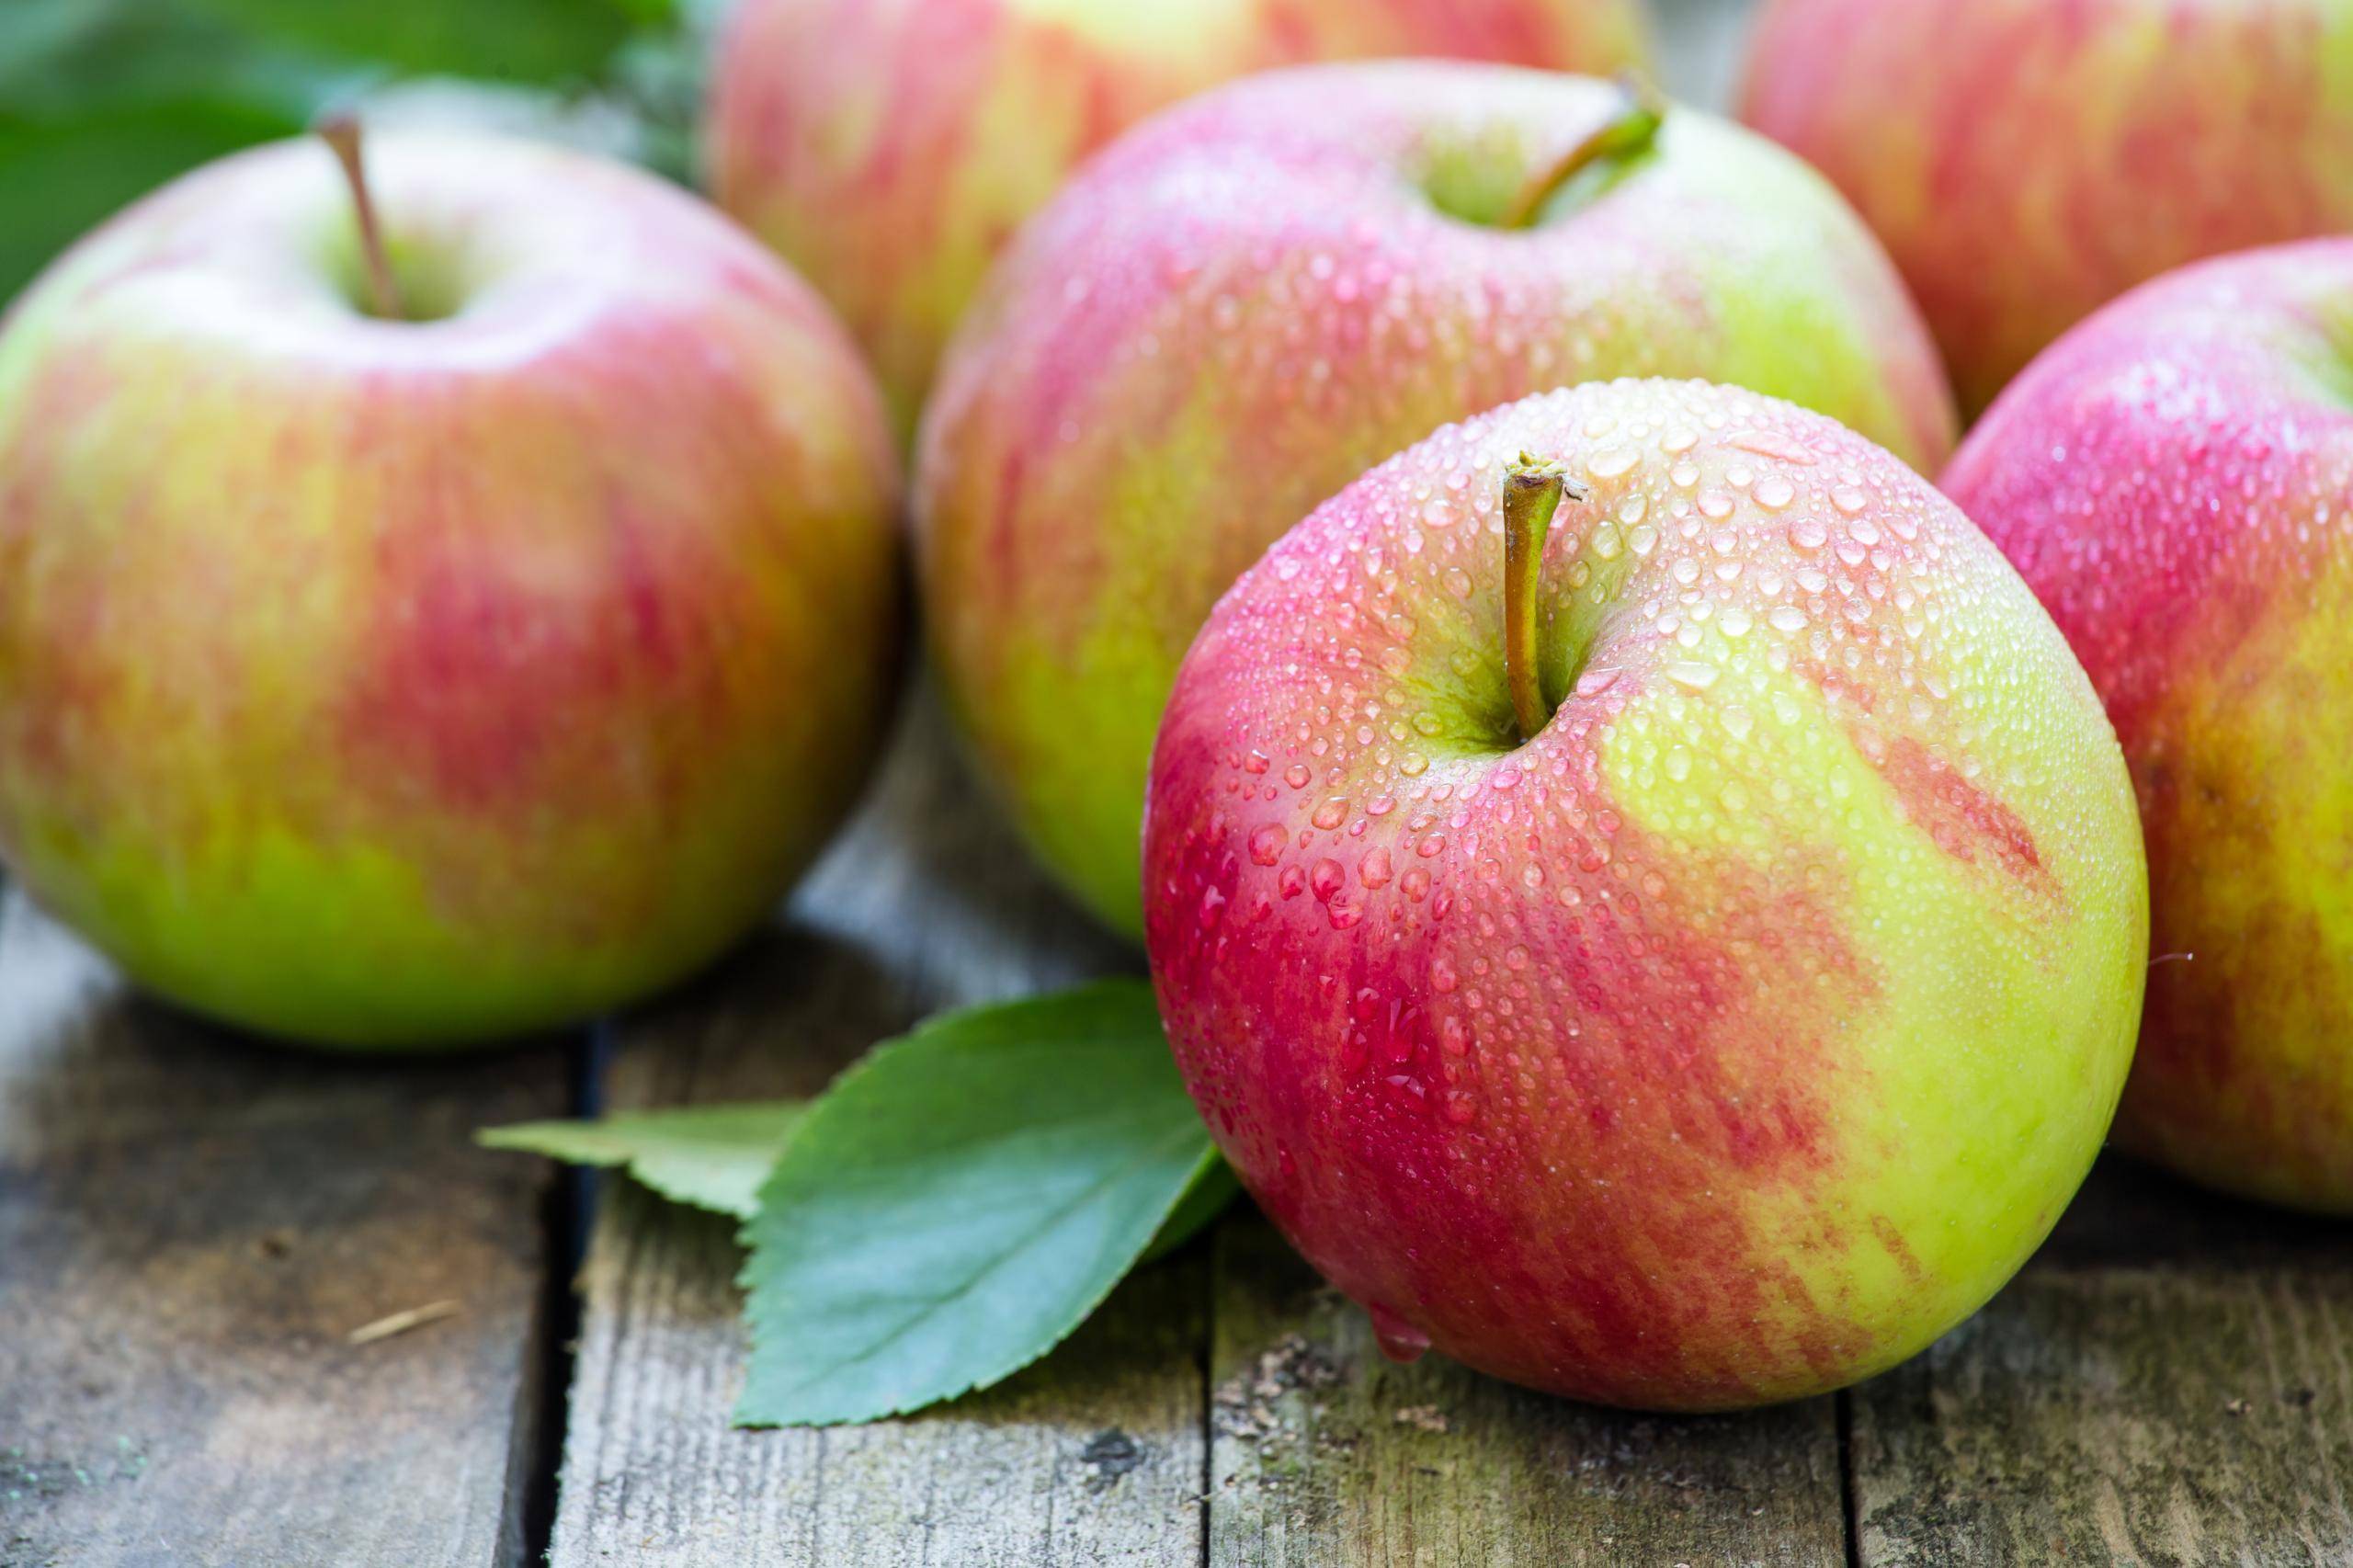 Польза и вред персиков для здоровья, состав, правила выбора и свойства